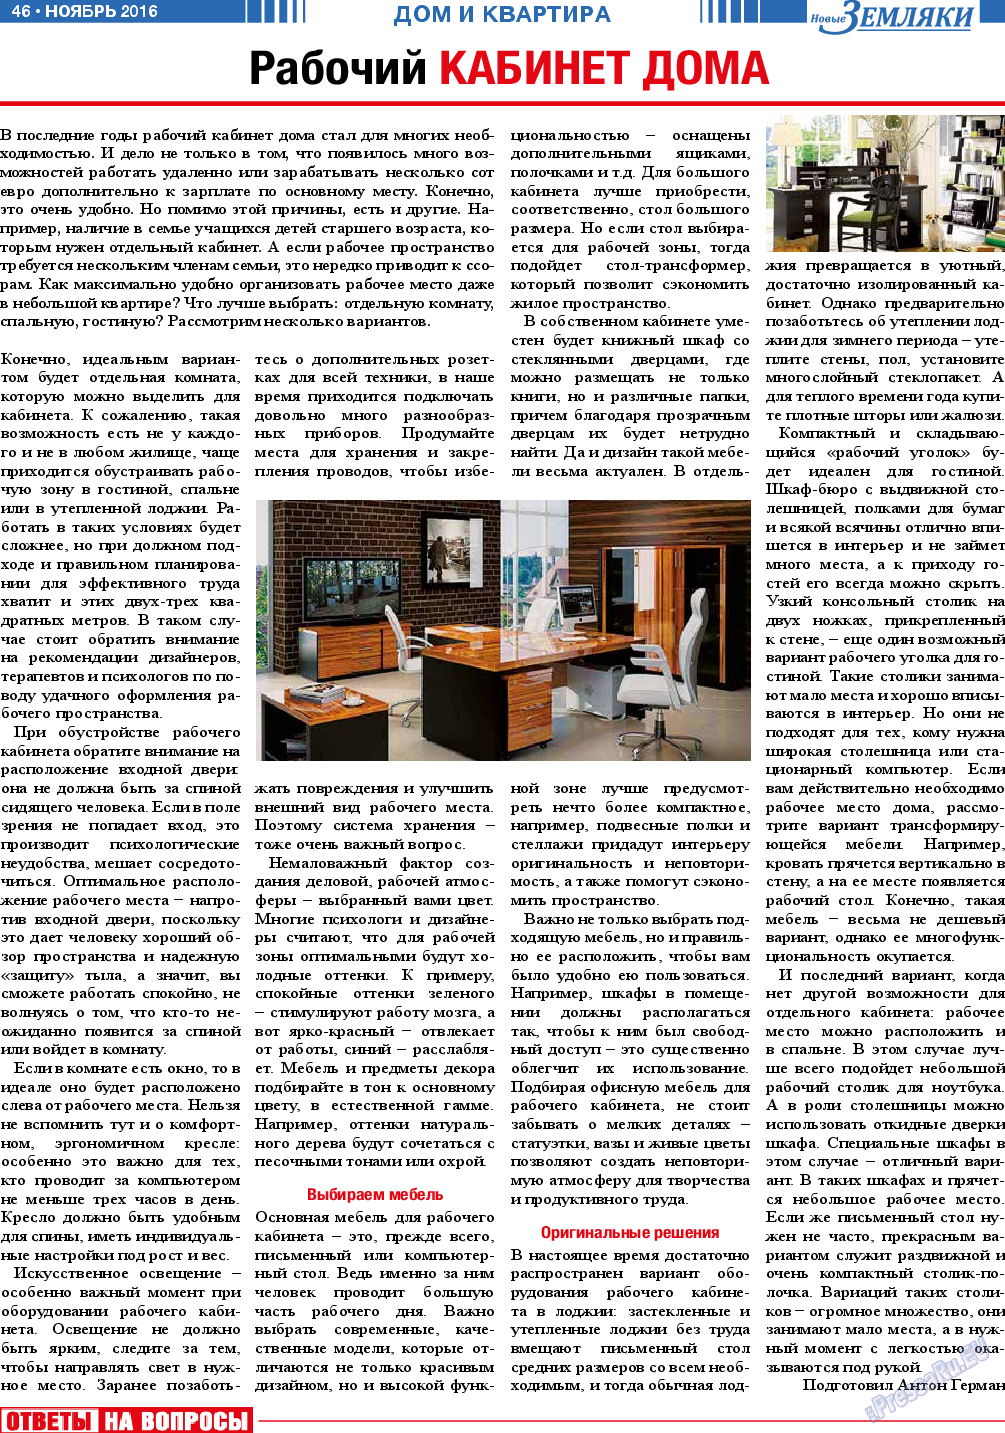 Новые Земляки (газета). 2016 год, номер 11, стр. 46